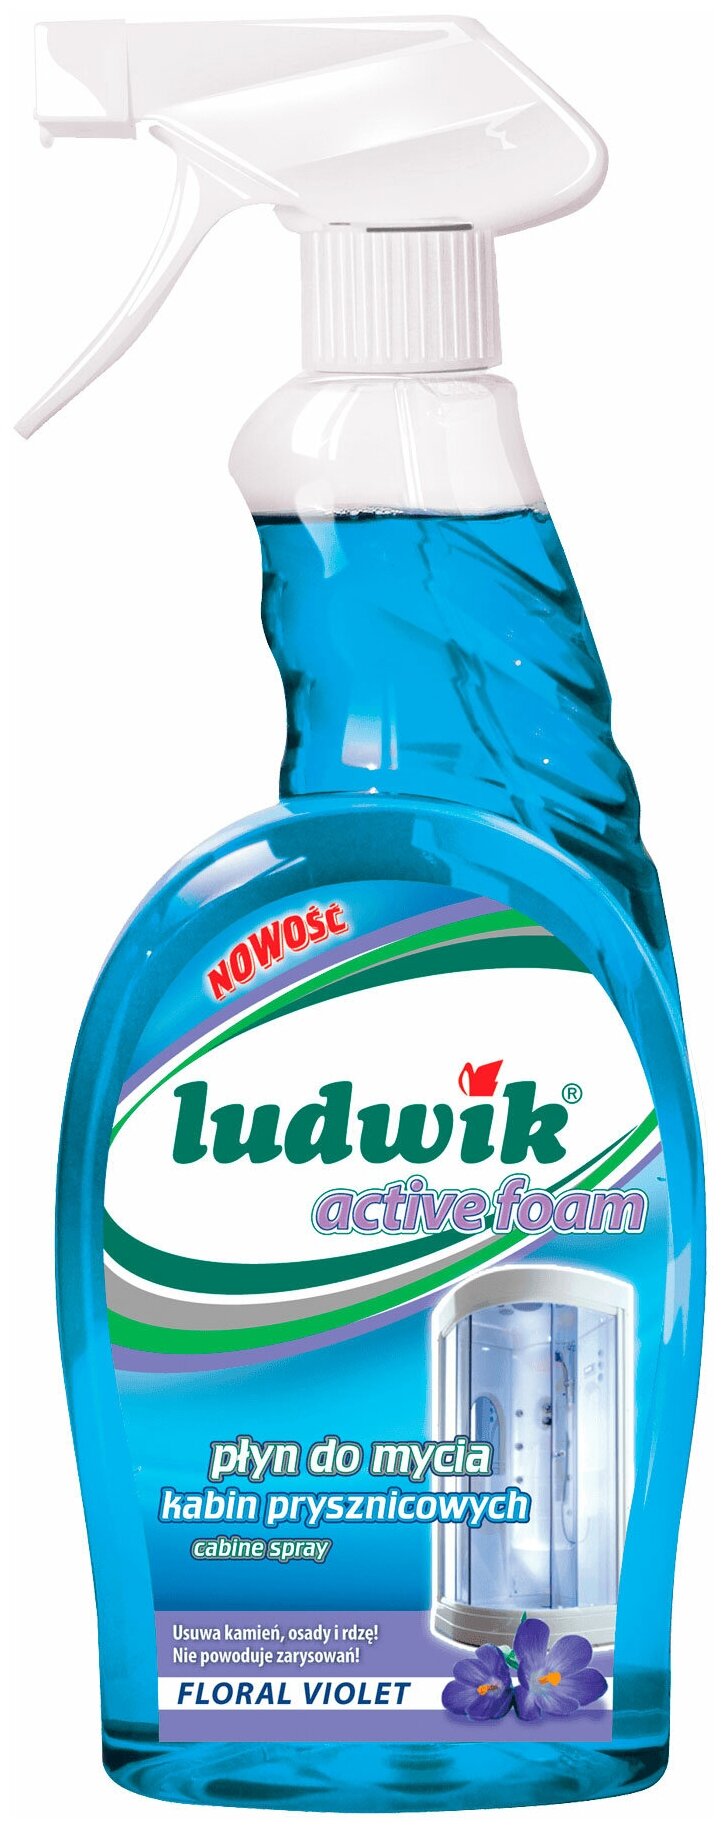 Средство для мытья душевых кабин активная пена "Ludwik", 750 мл